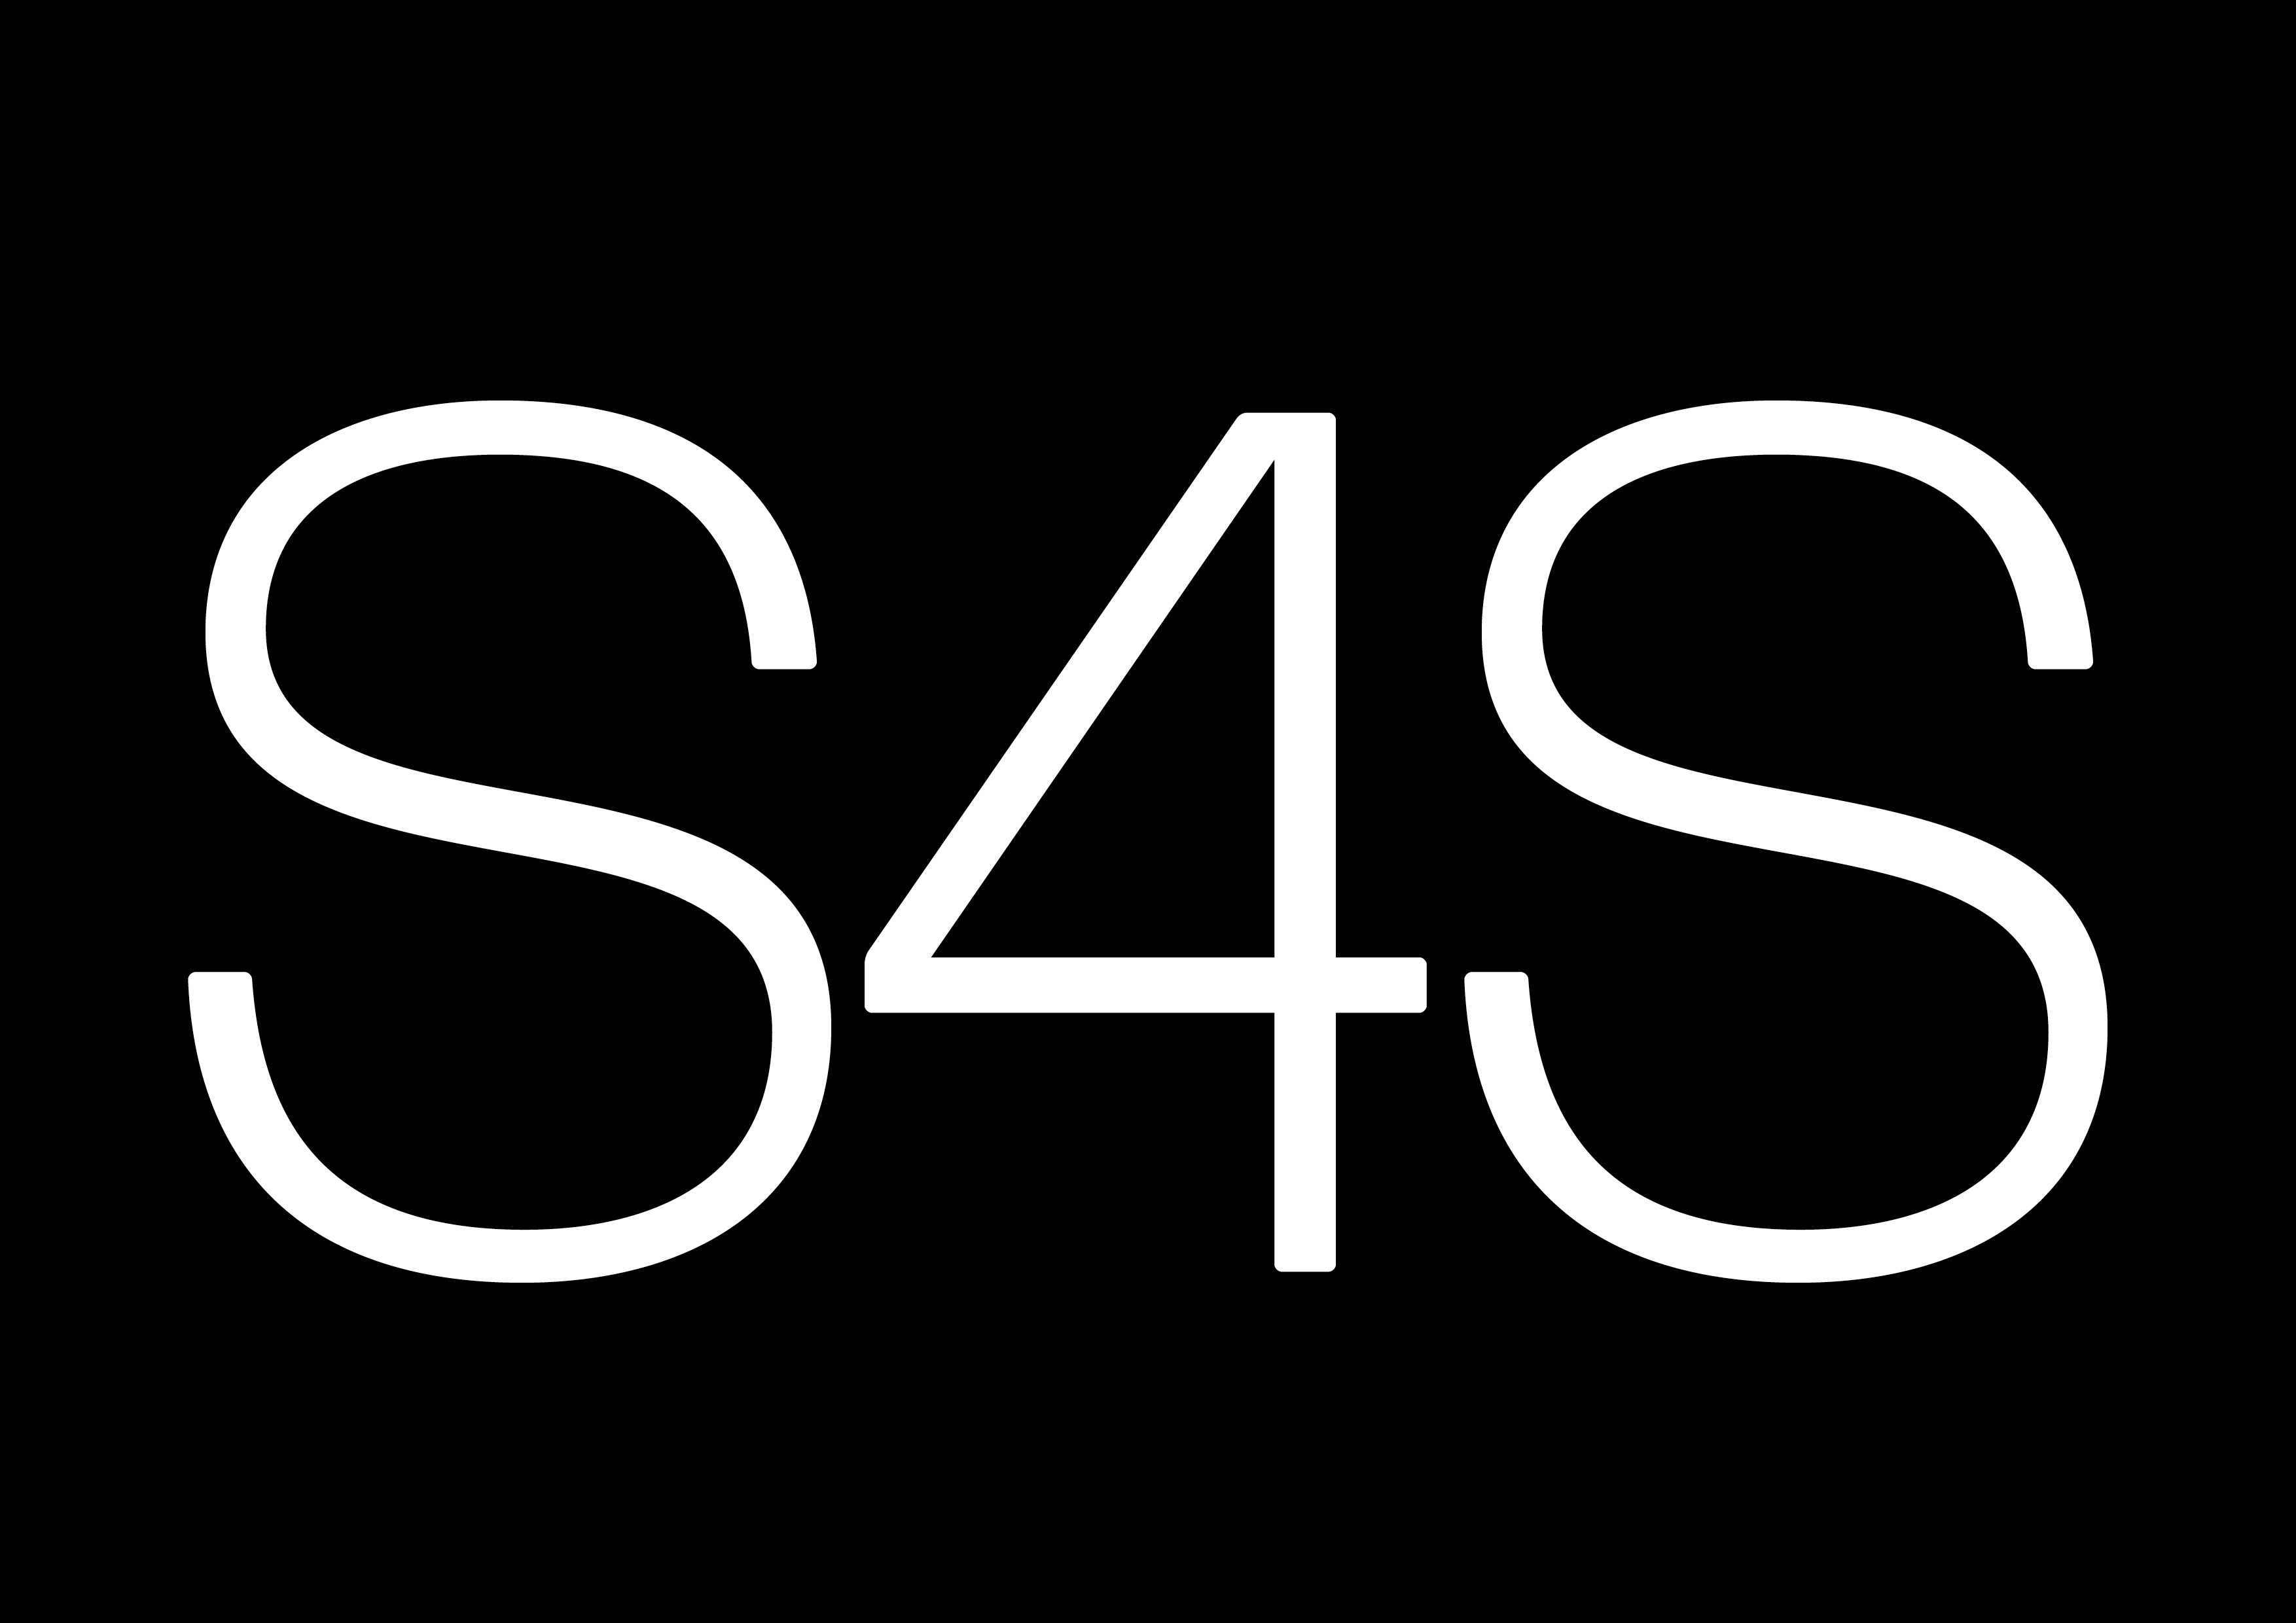 S4S